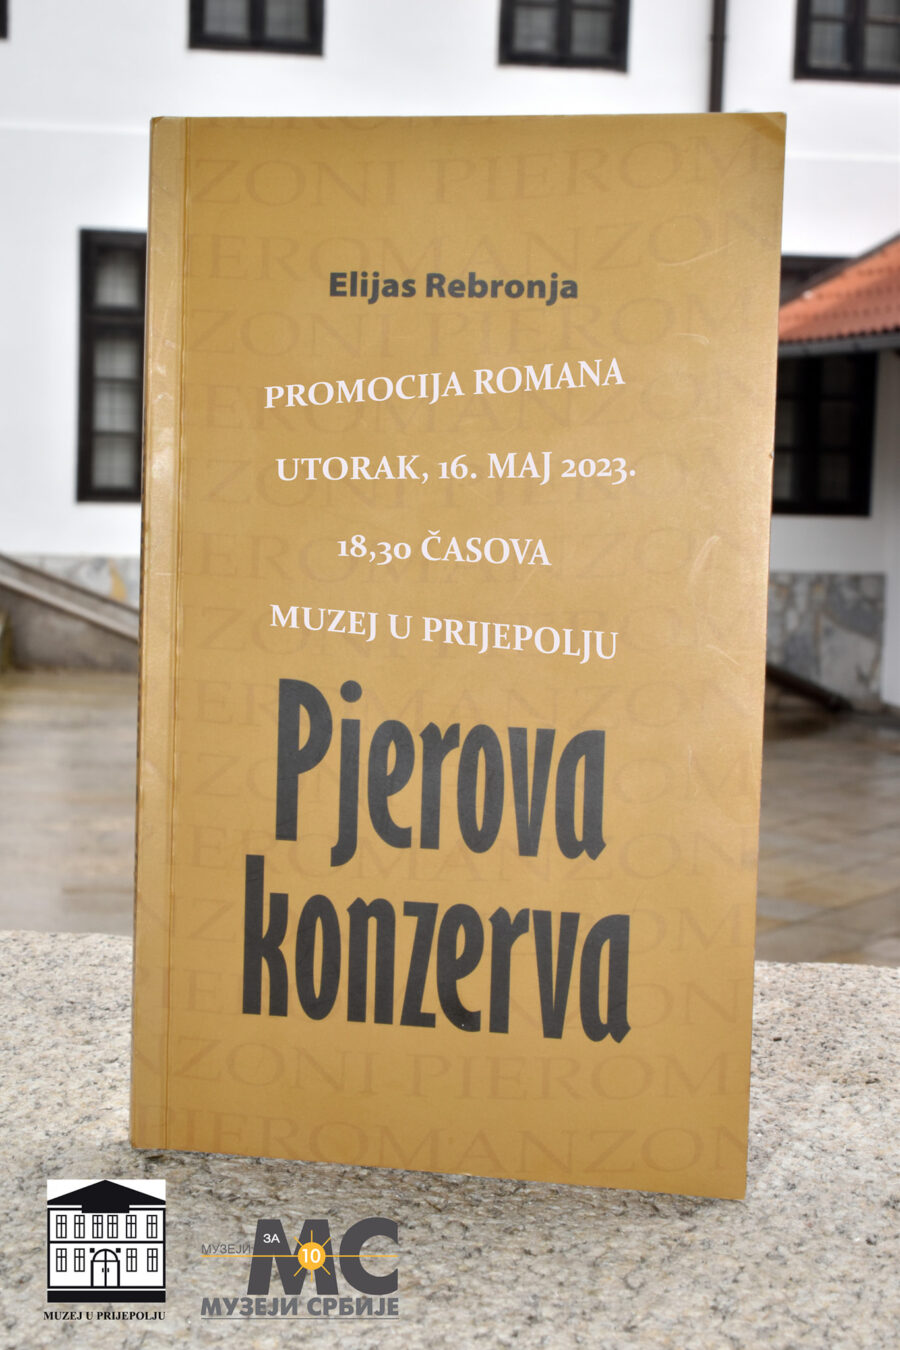 Промовисан роман Елијаса Реброње „Пјерова конзерва“